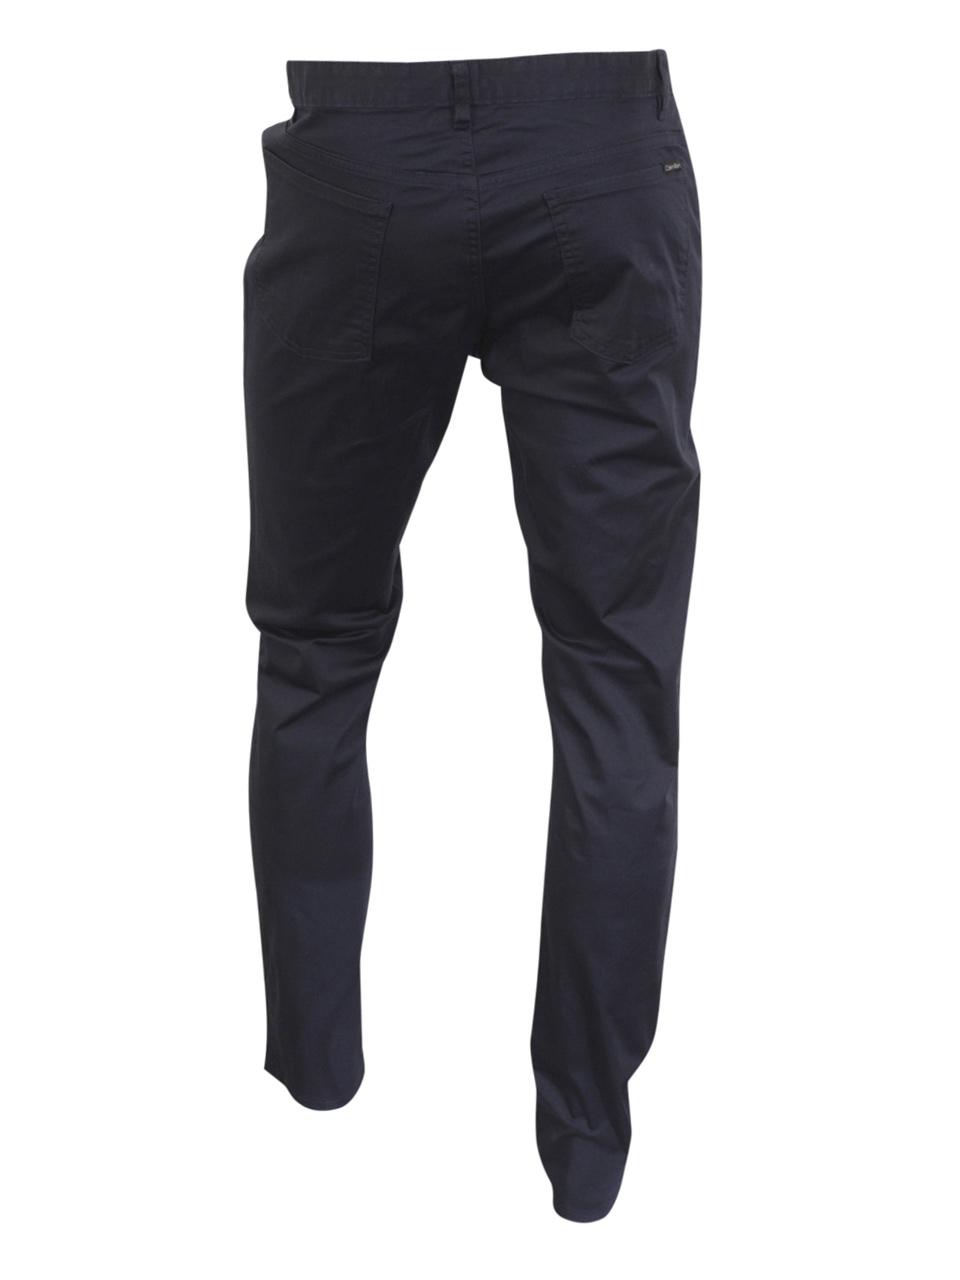 Calvin Klein Herren die Authentisch 5-Pocket Slim Fit Stretch Hose | eBay